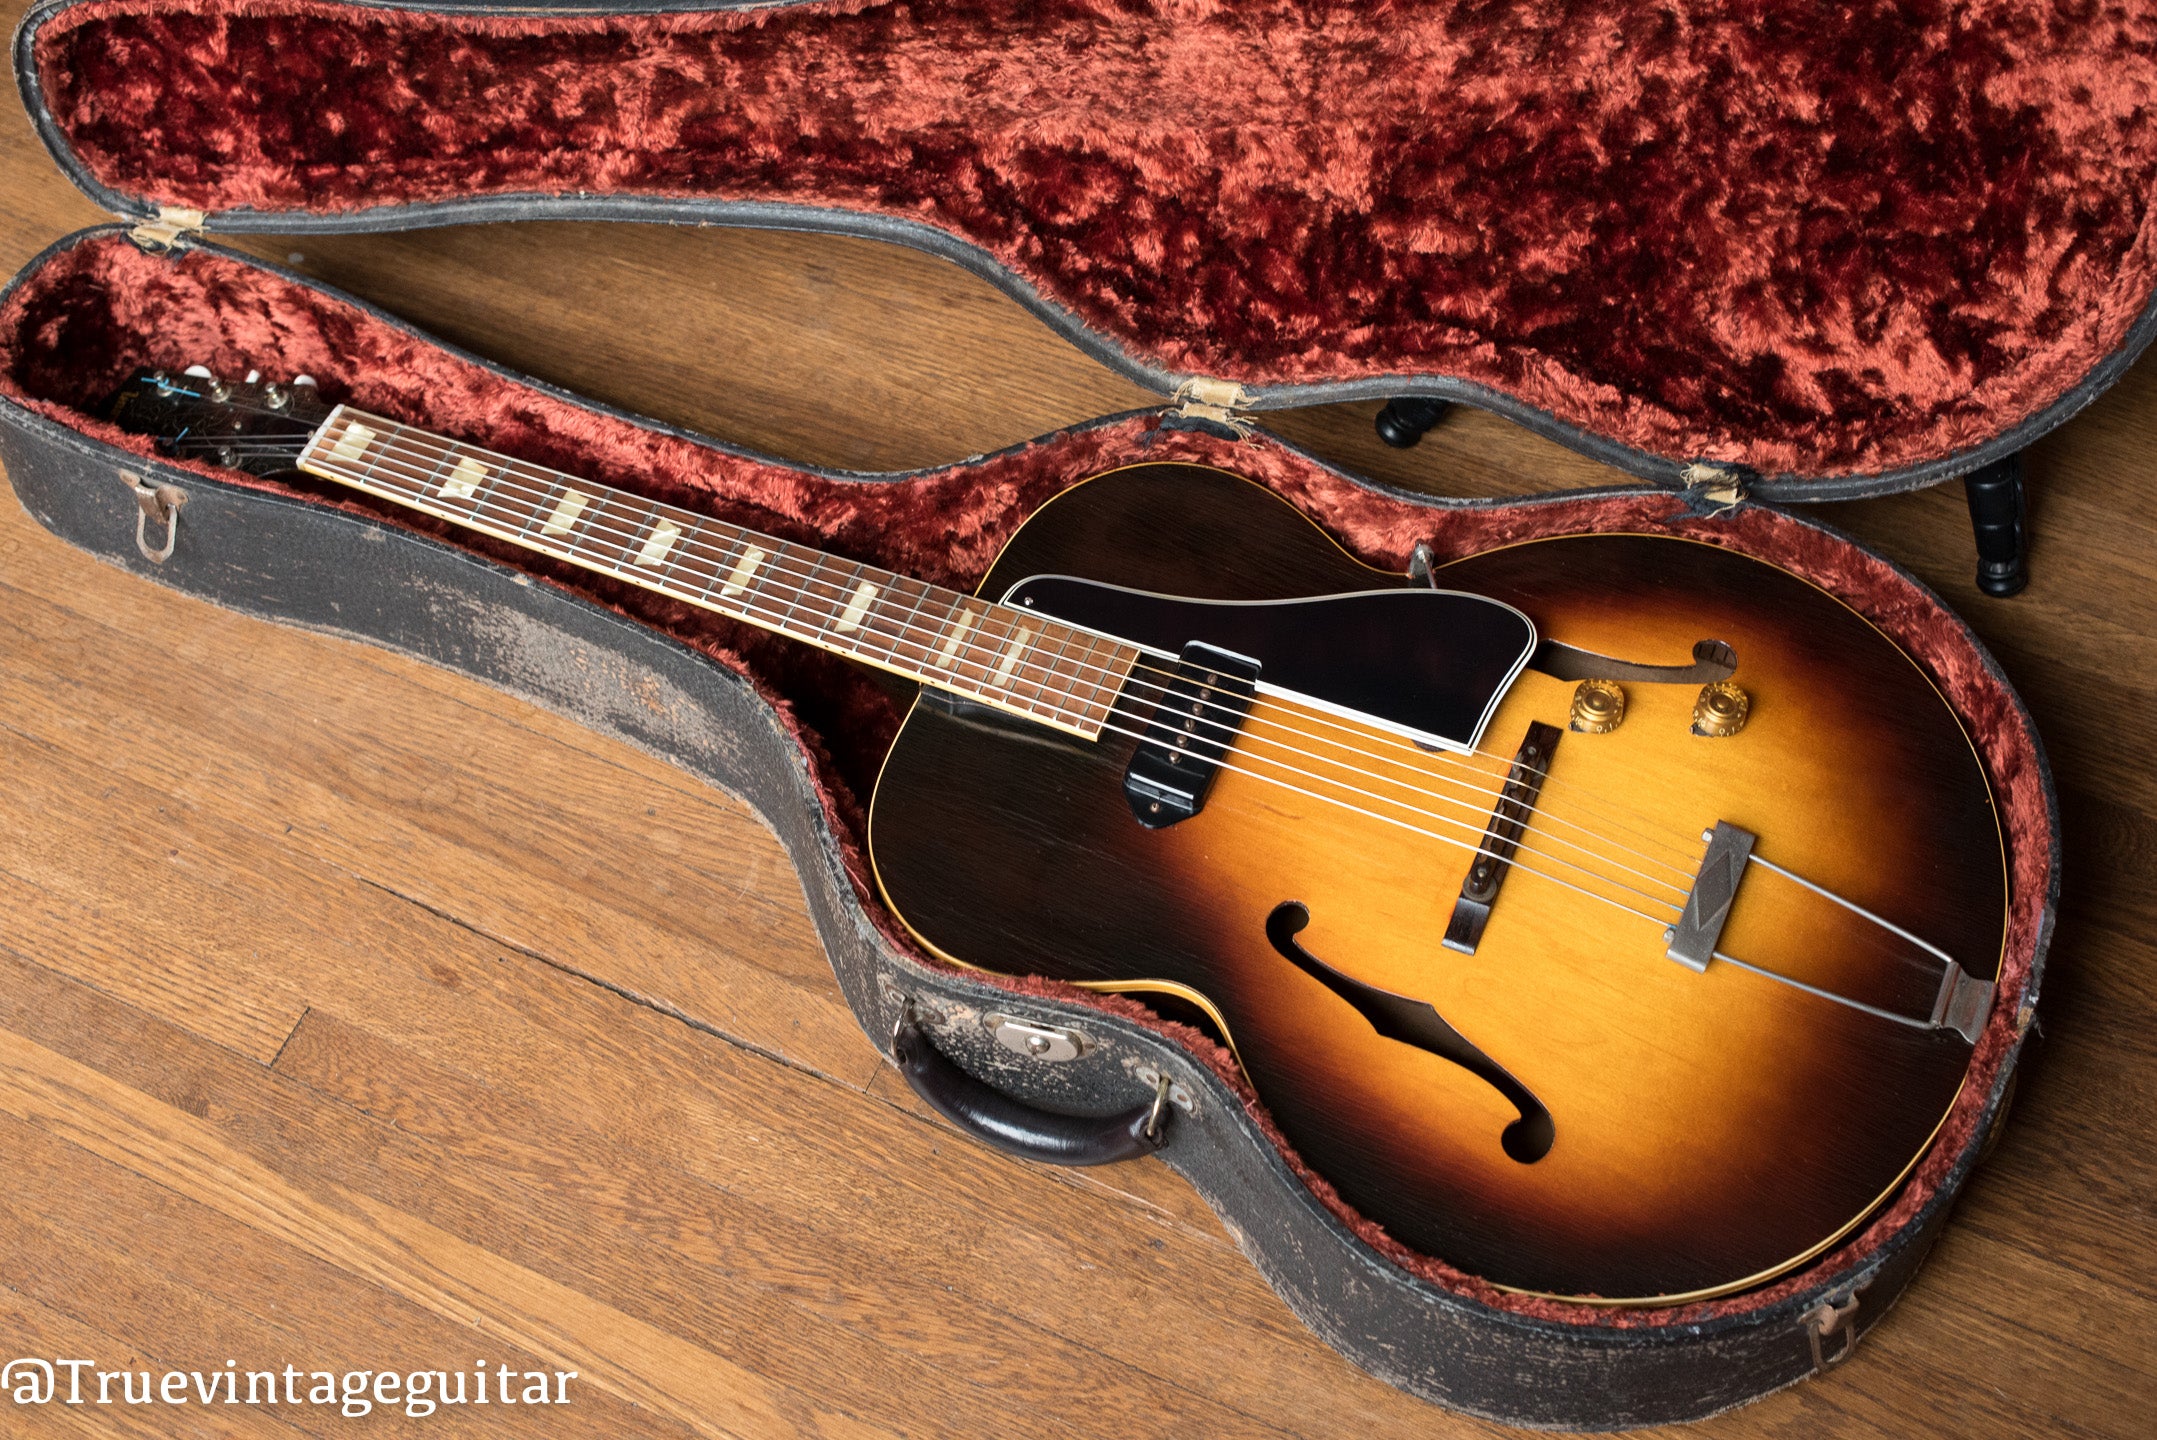 1950s Gibson guitar